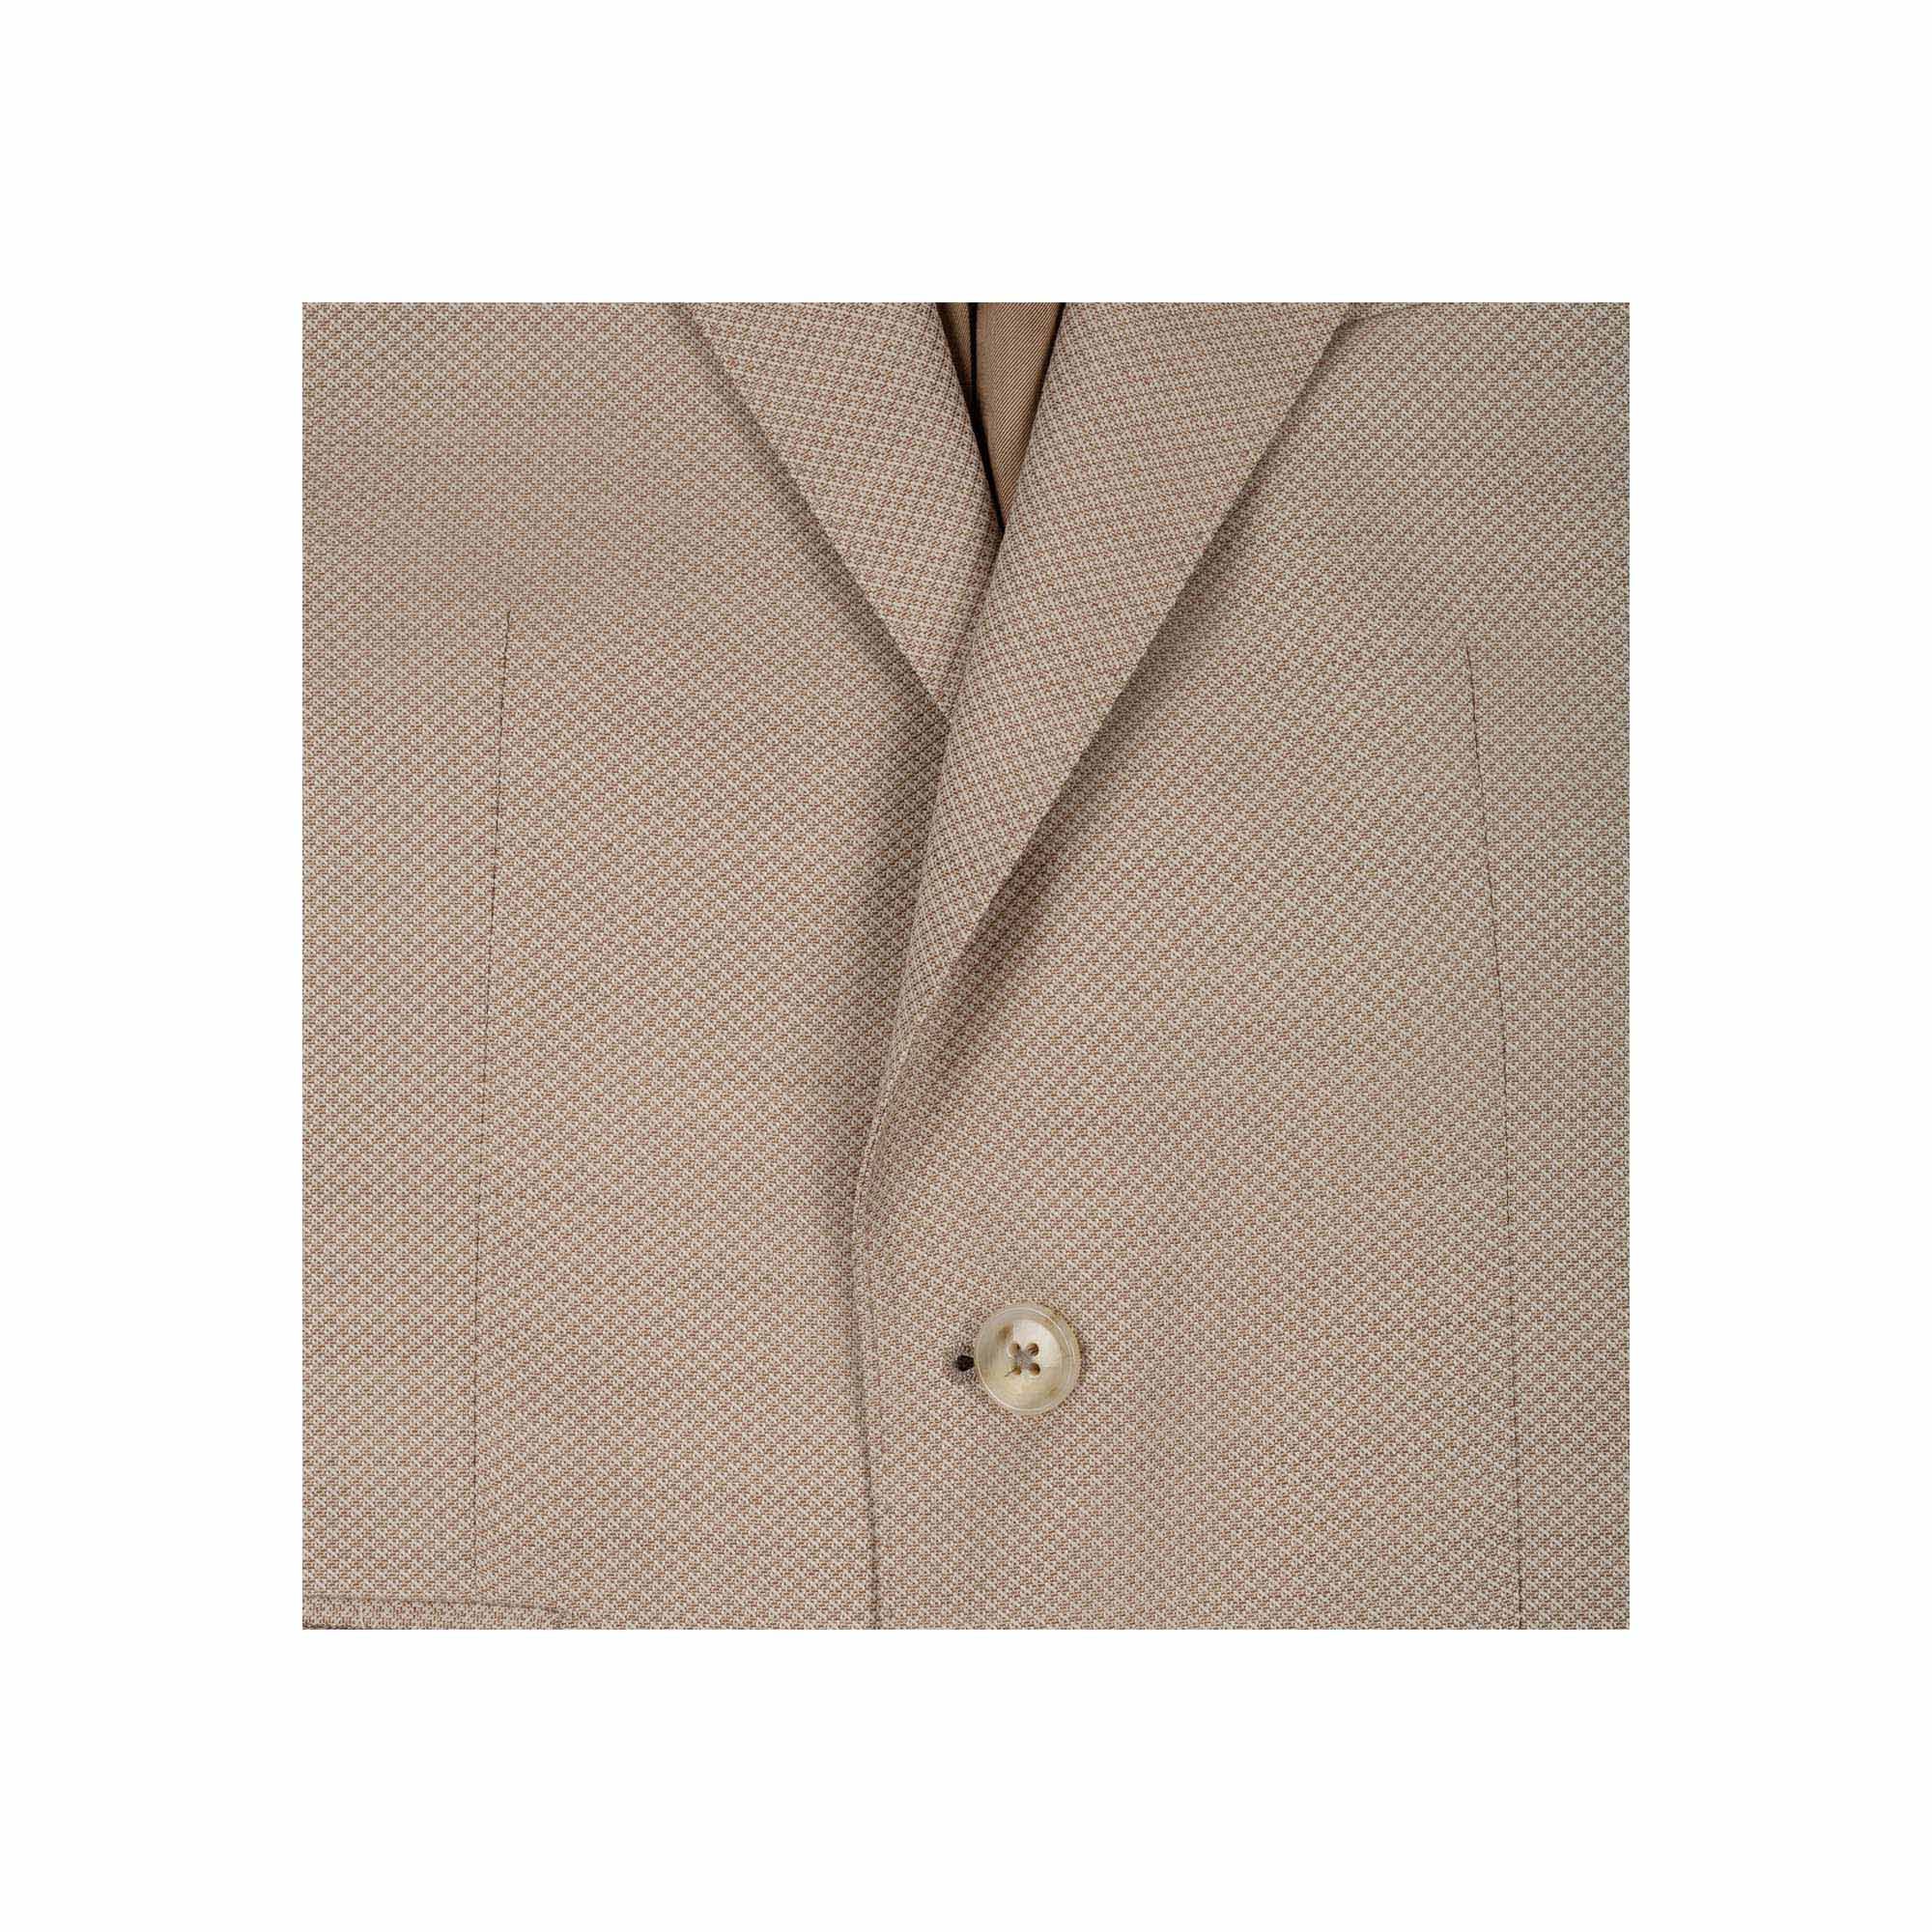 Men's 3-piece suit beige